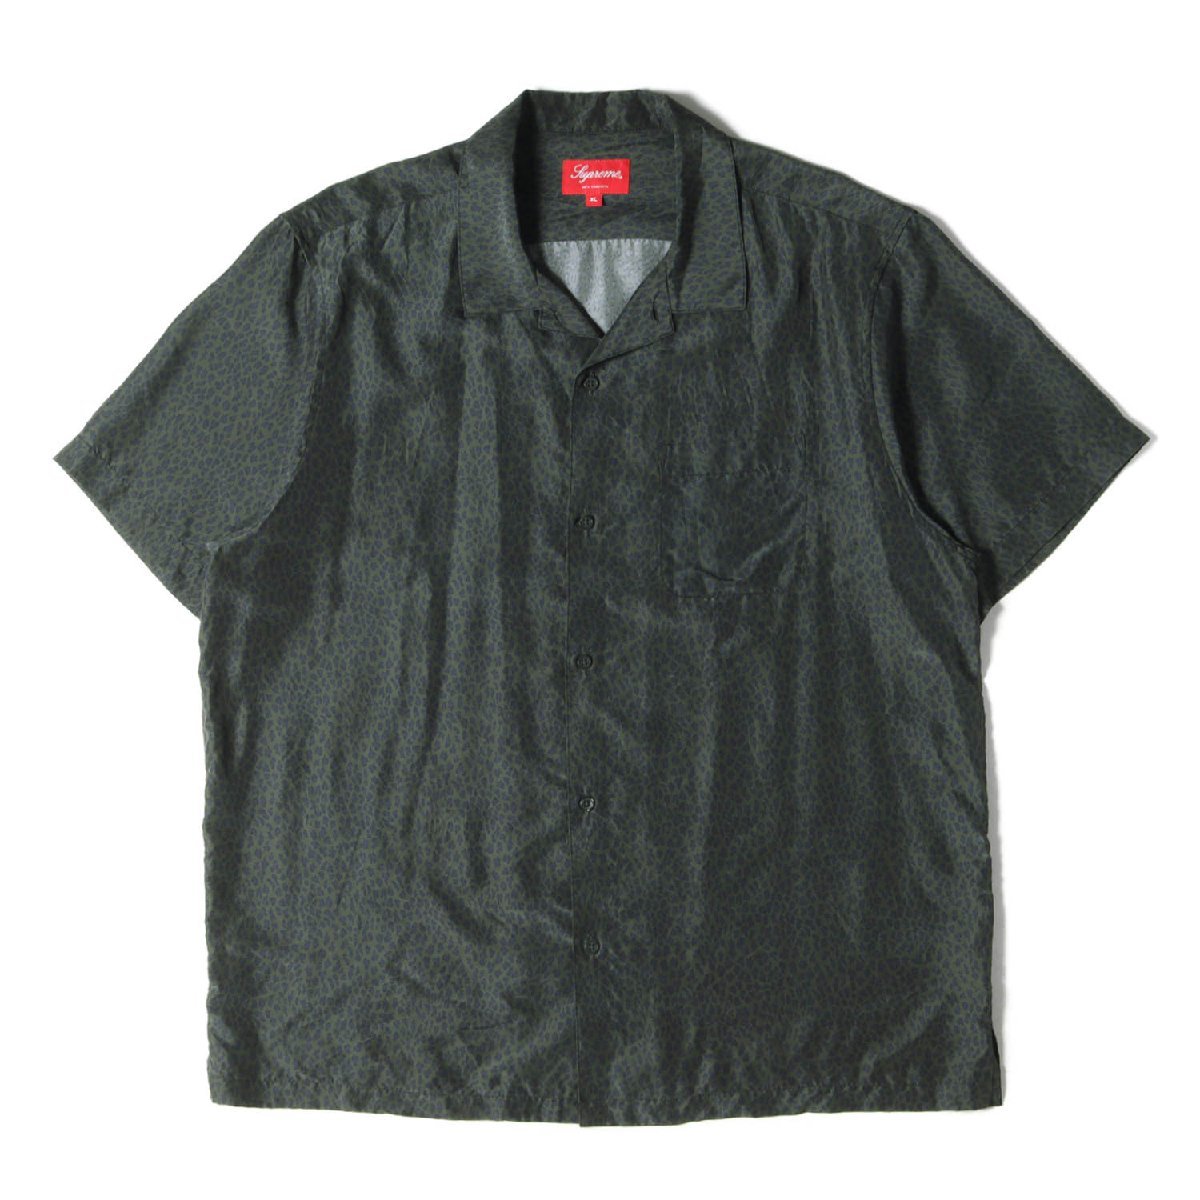 美品 Supreme シュプリーム シャツ サイズ:XL レオパード柄 シルク オープンカラー 半袖シャツ Leopard Silk S/S Shirt 22SS チャコール